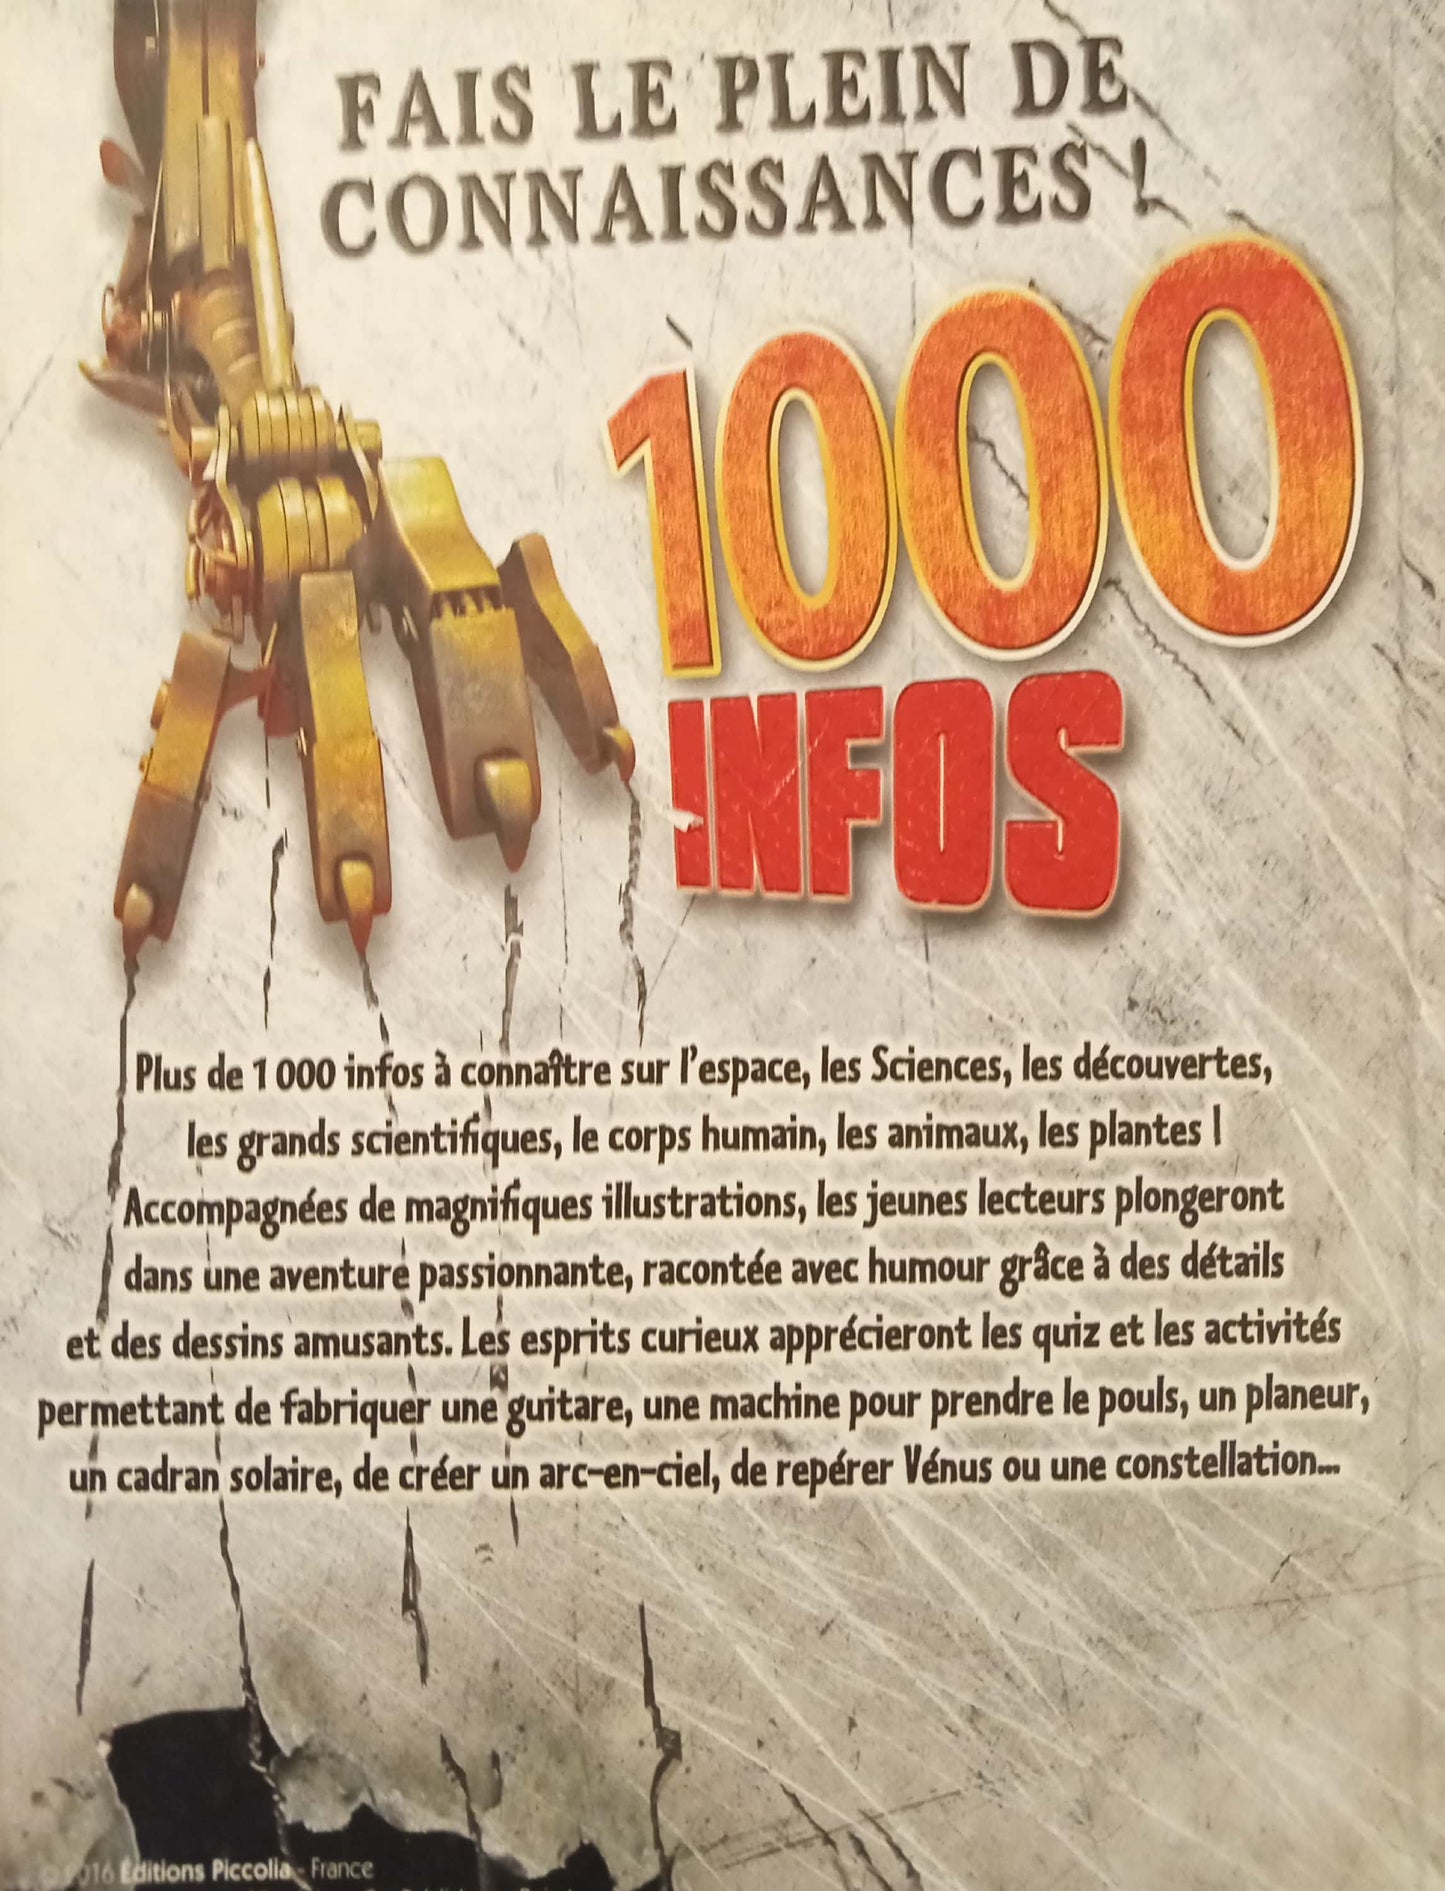 1000 Infos